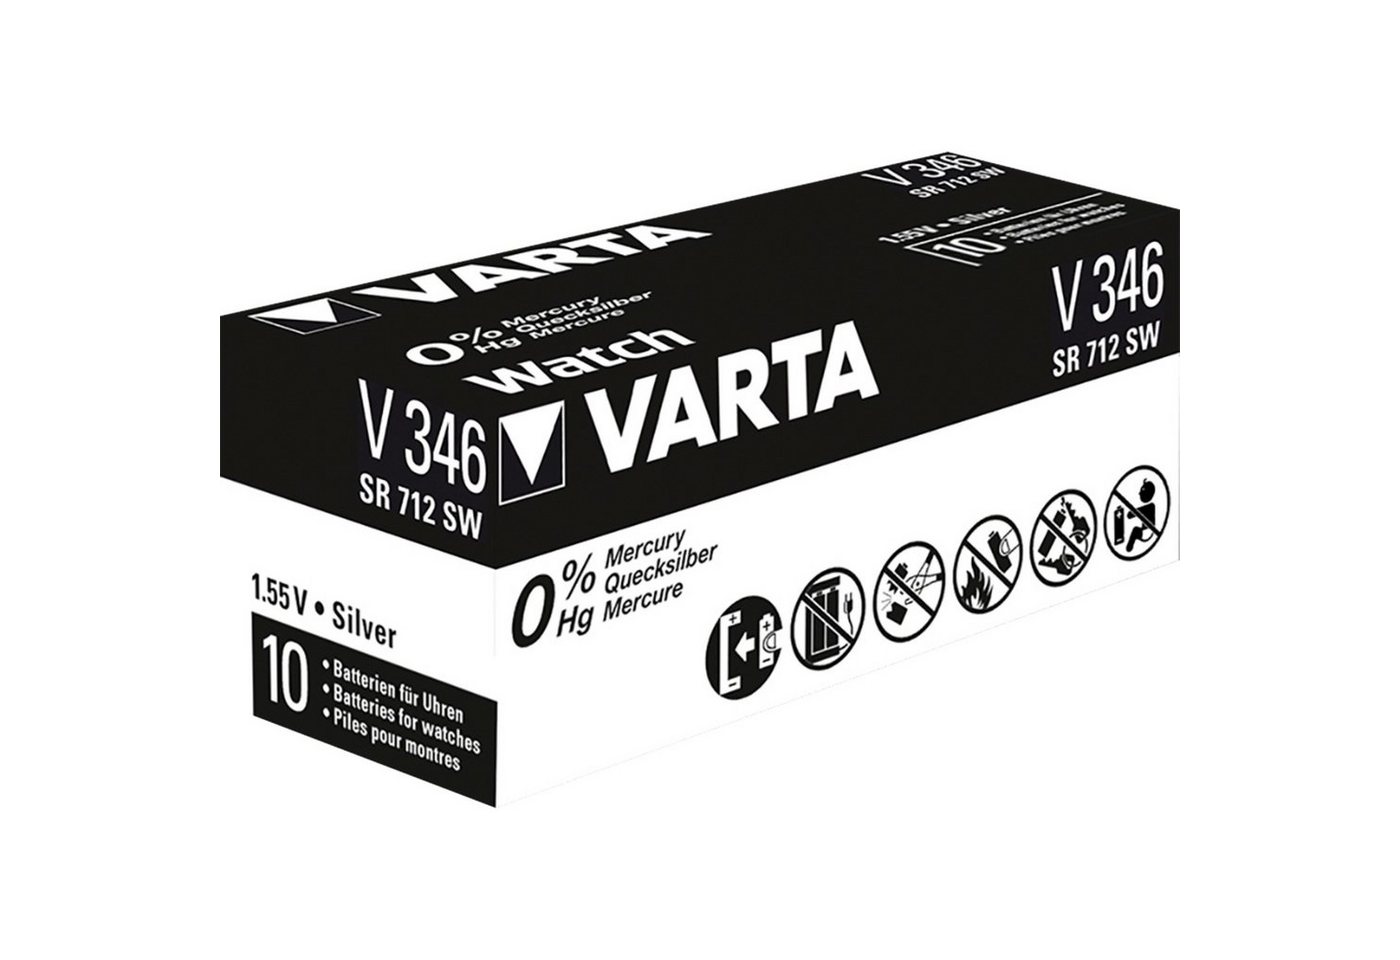 VARTA V346 SR712 Batterie von VARTA